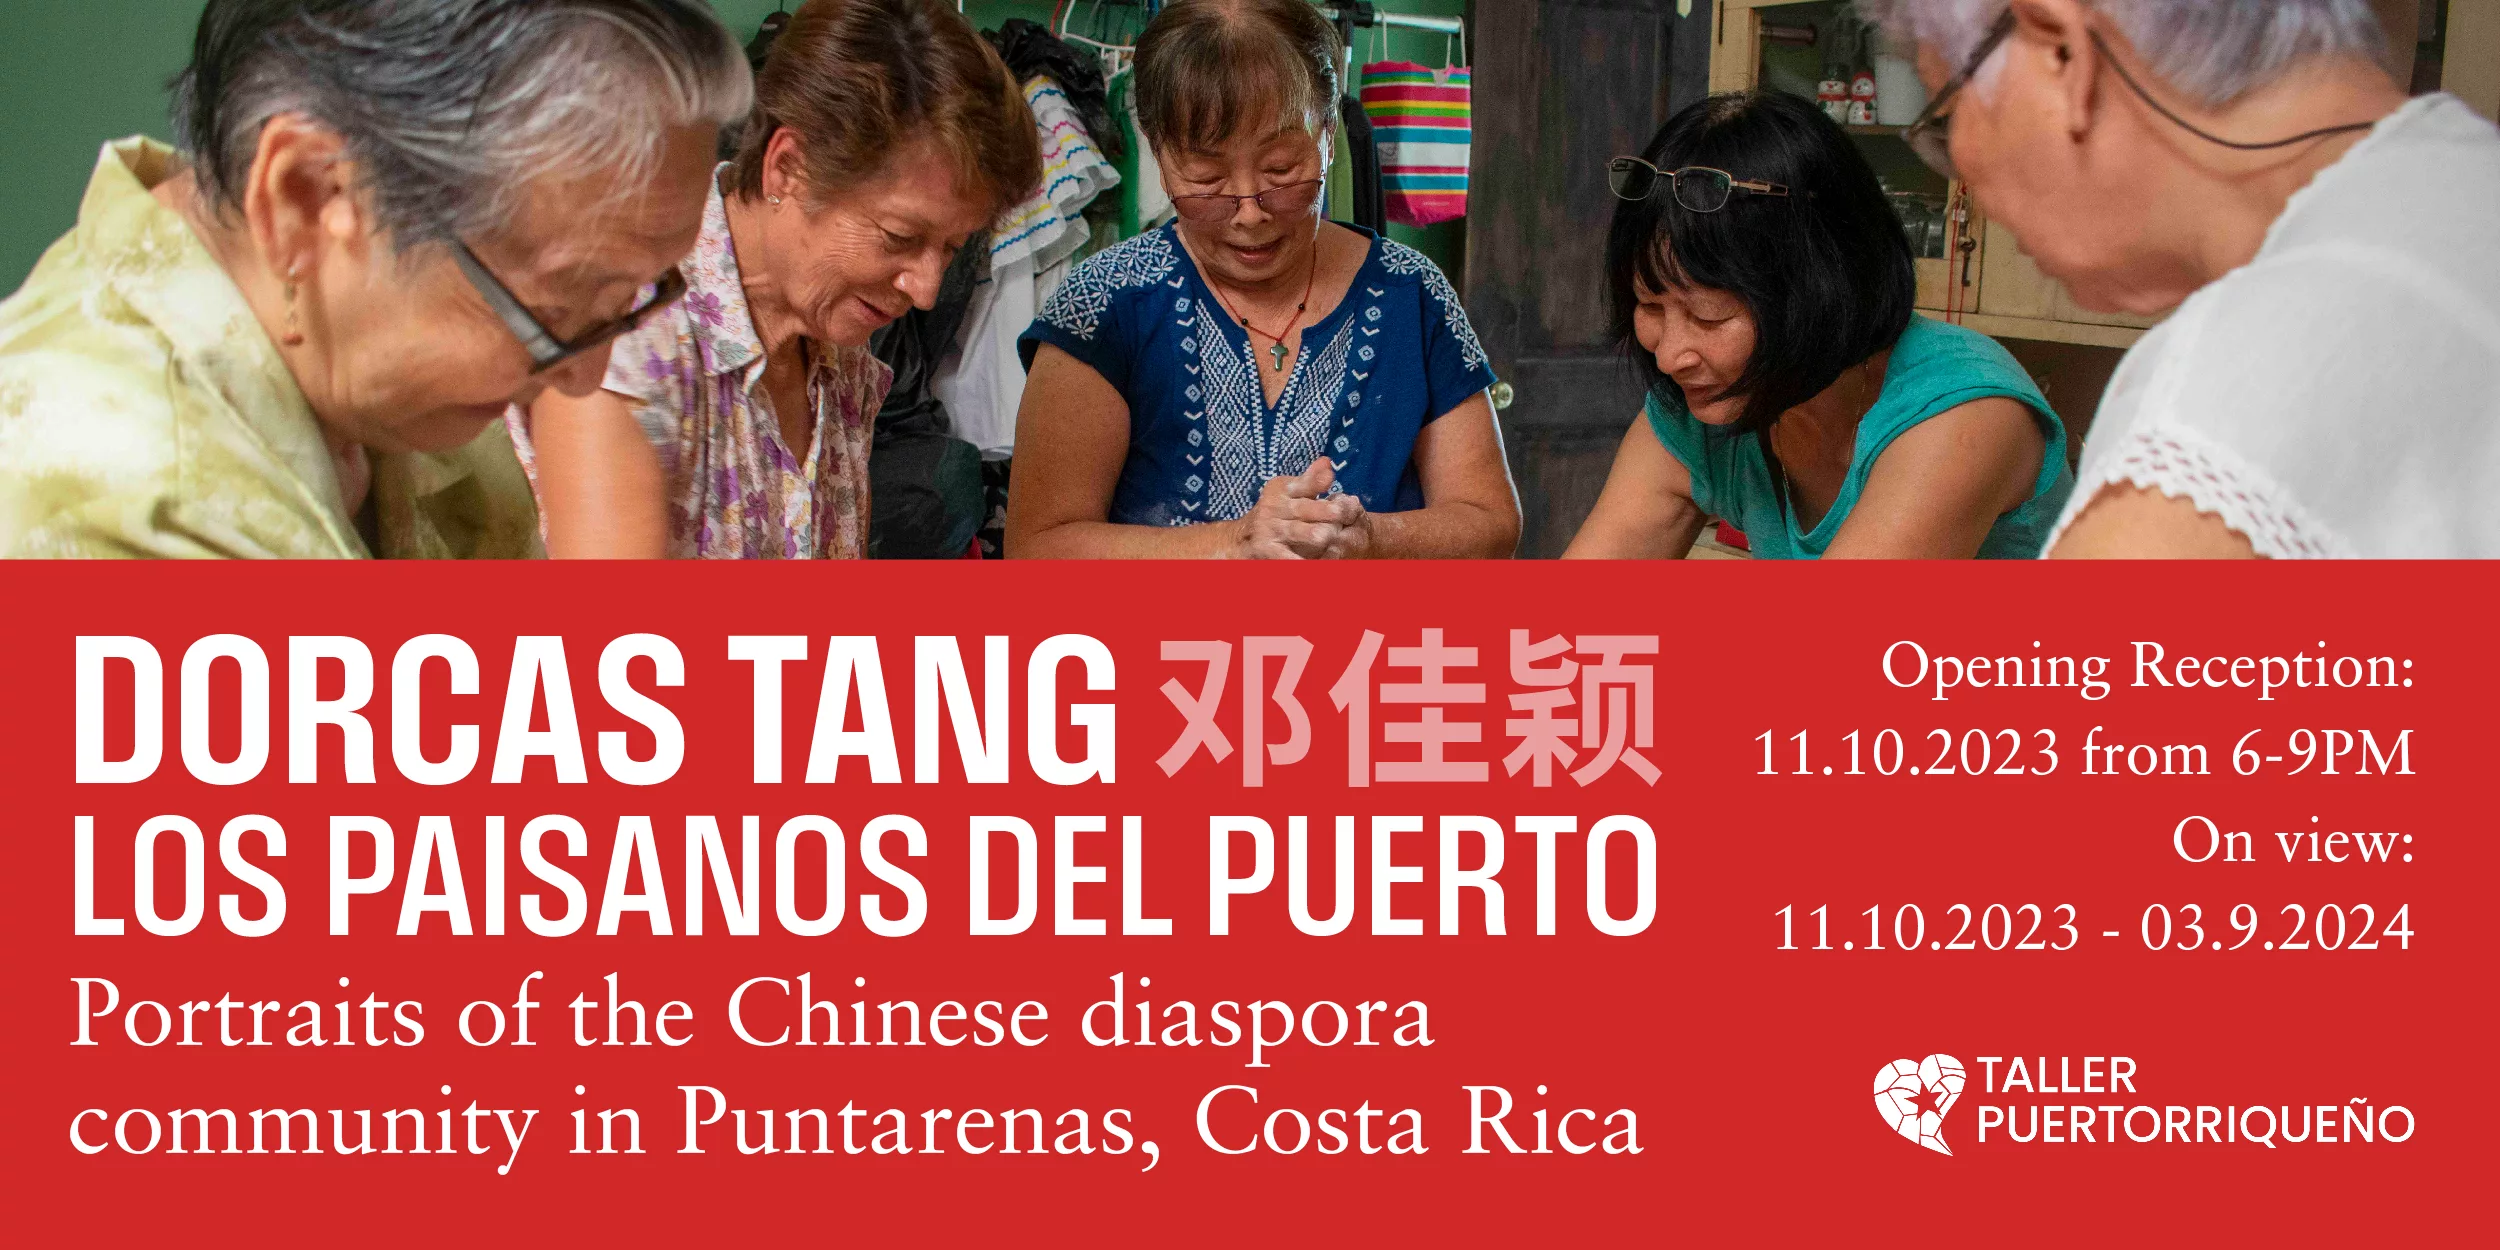 Los Paisanos del Puerto: Portraits of the Chinese diaspora community in Puntarenas, Costa Rica